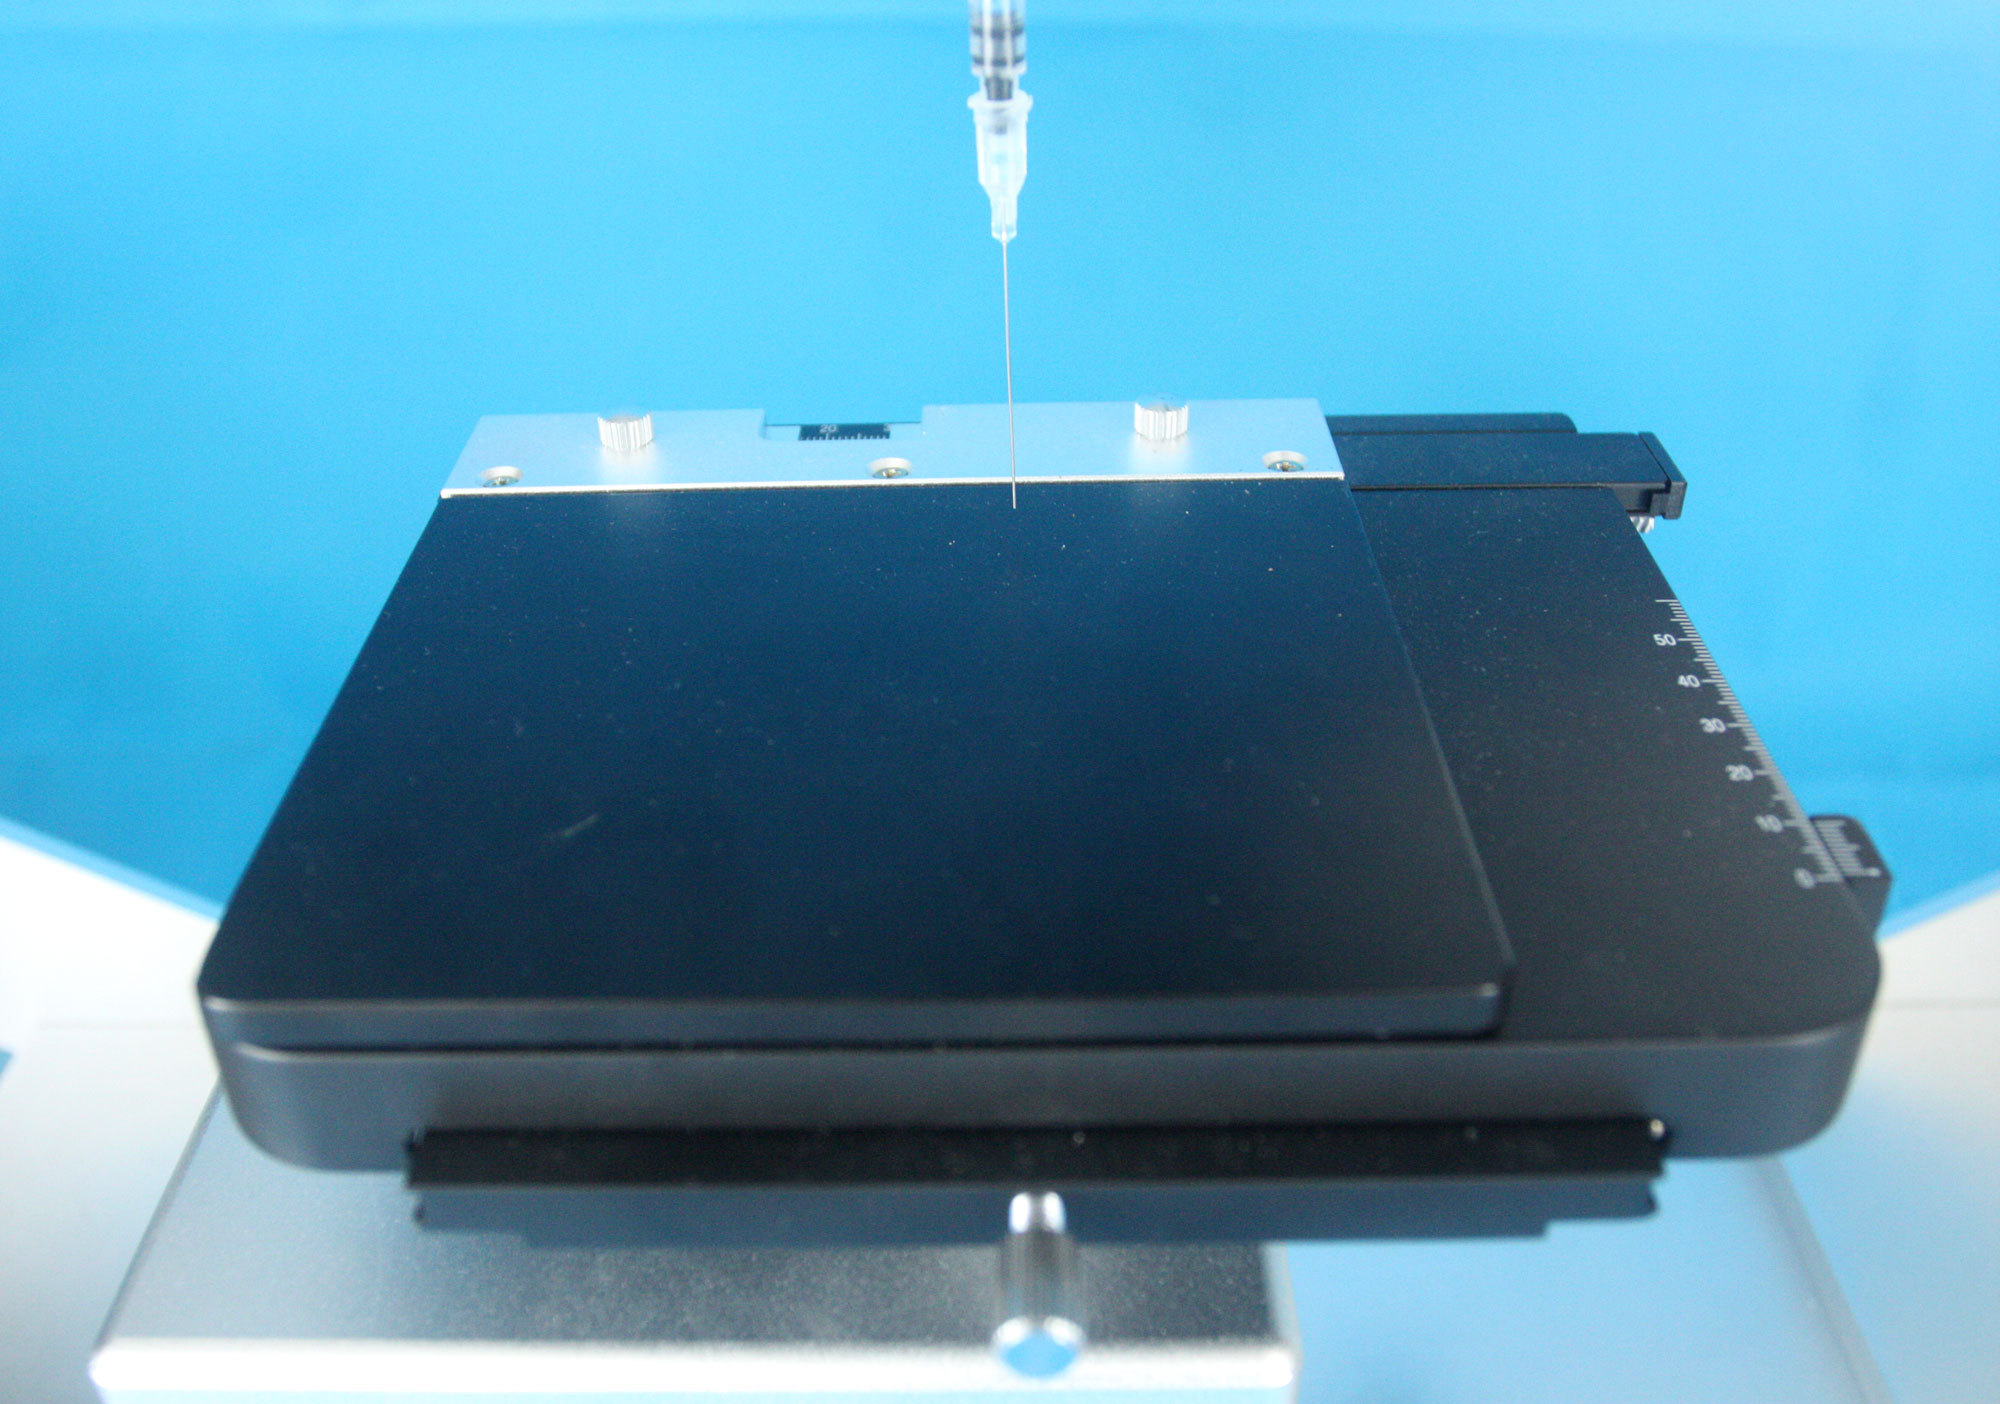 研究型接触角测量仪DSA-X